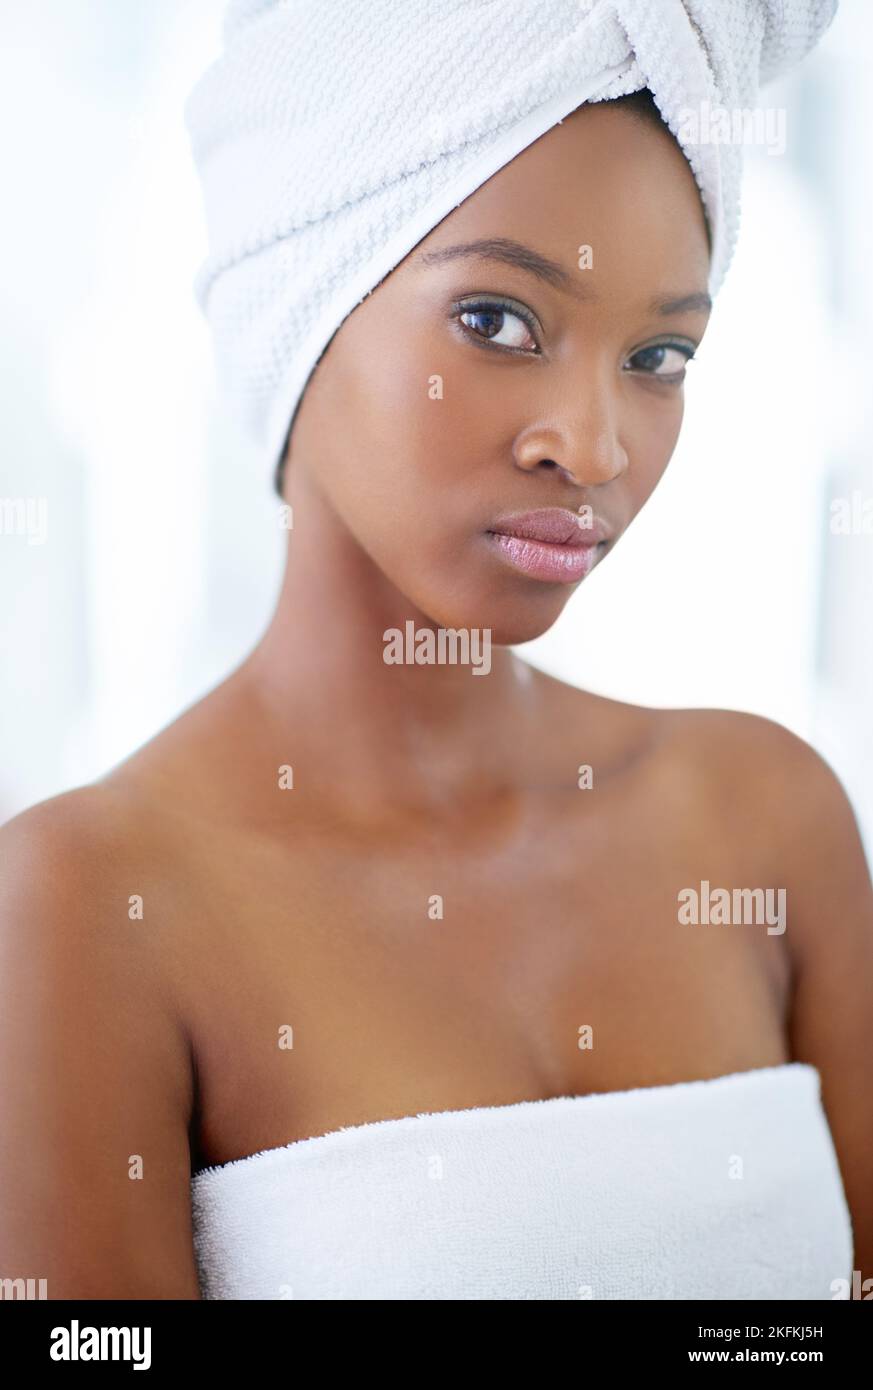 Es hora de tomar en serio el cuidado de la piel. Una mujer joven y hermosa durante su rutina diaria de belleza. Foto de stock